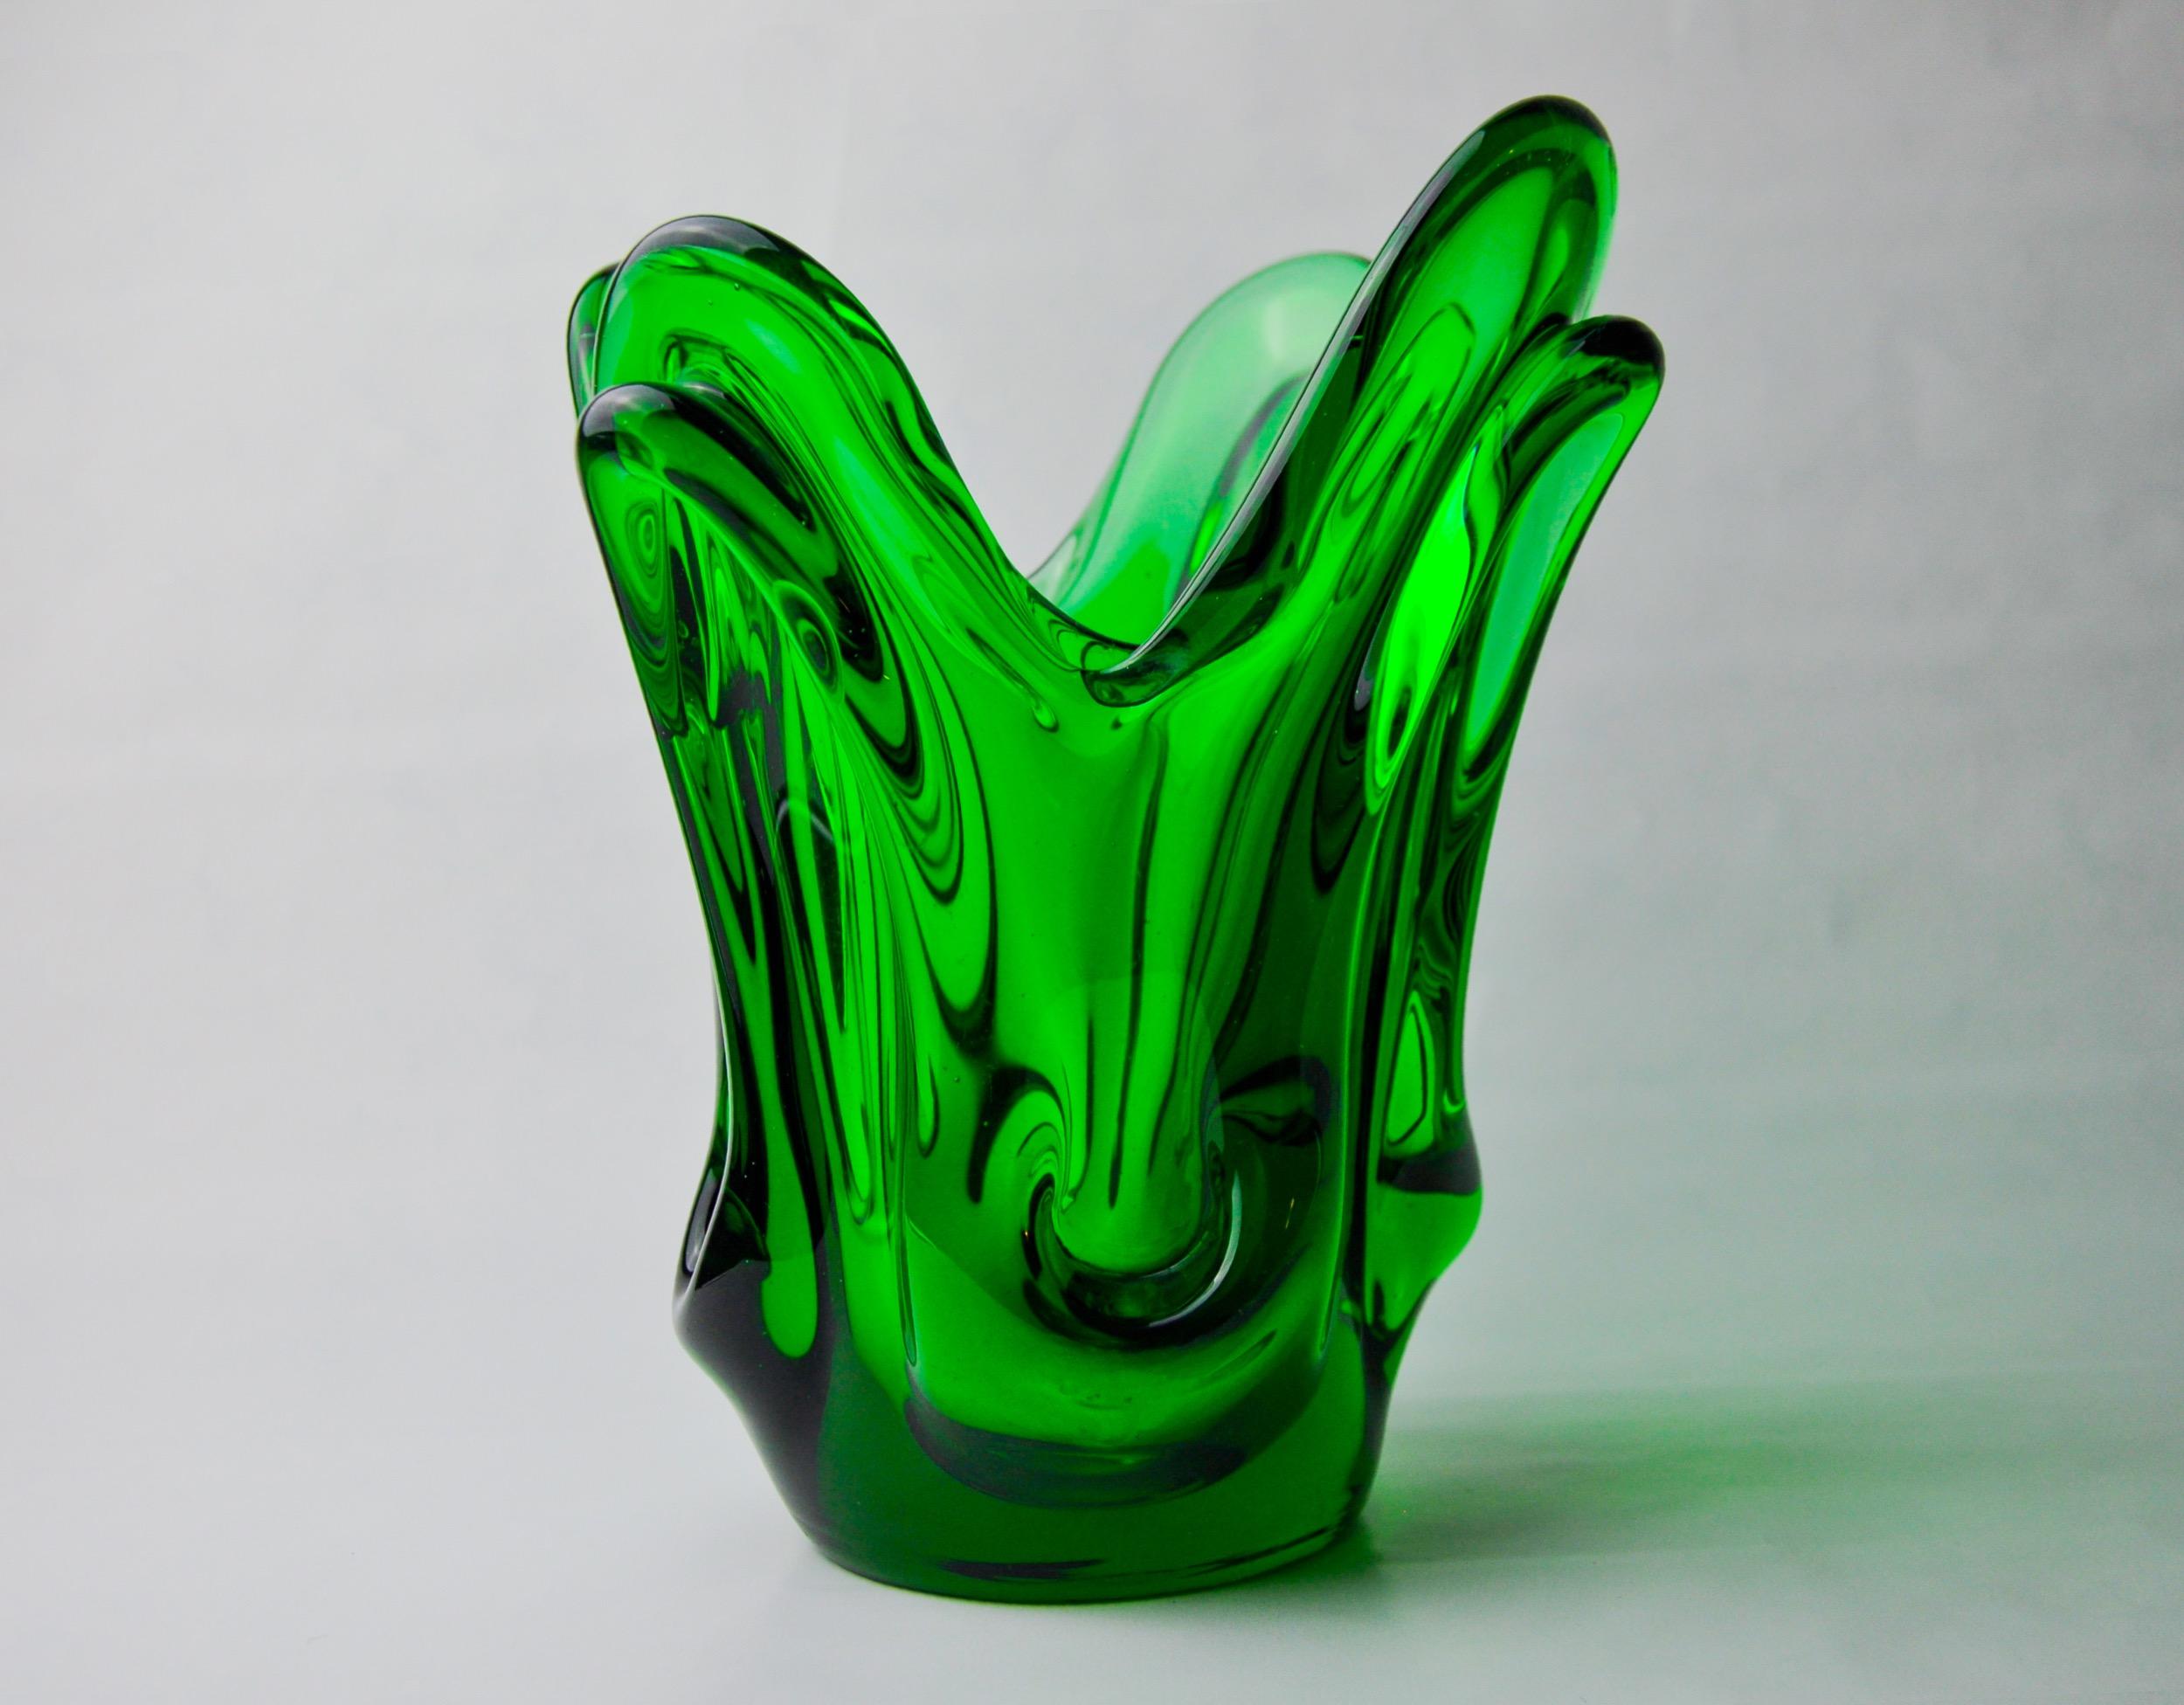 Magnífico jarrón diseñado y fabricado por seguso en italia en la década de 1970. Jarrón de cristal de murano verde con detalles dibujados y borde estriado según la técnica del sommerso. Hecho a mano por maestros vidrieros venecianos. Objeto